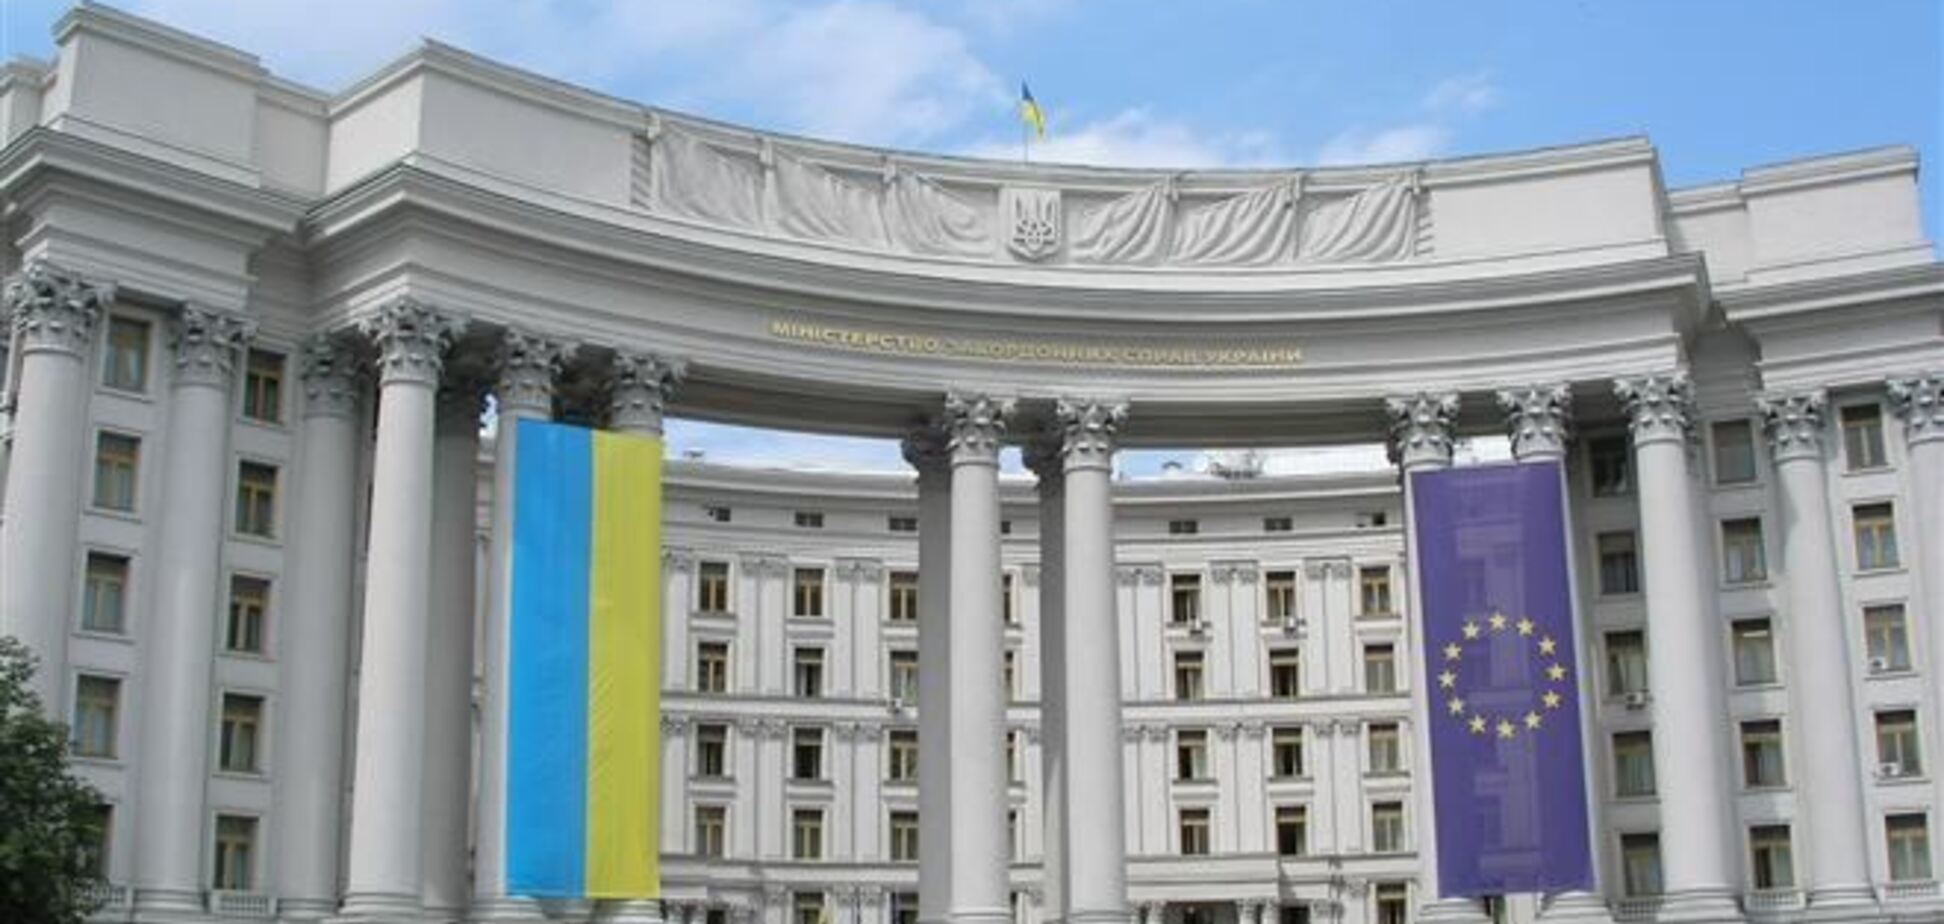 МИД вручил ноту России в связи с ее заявлением о 'декларации о независимости Крыма'